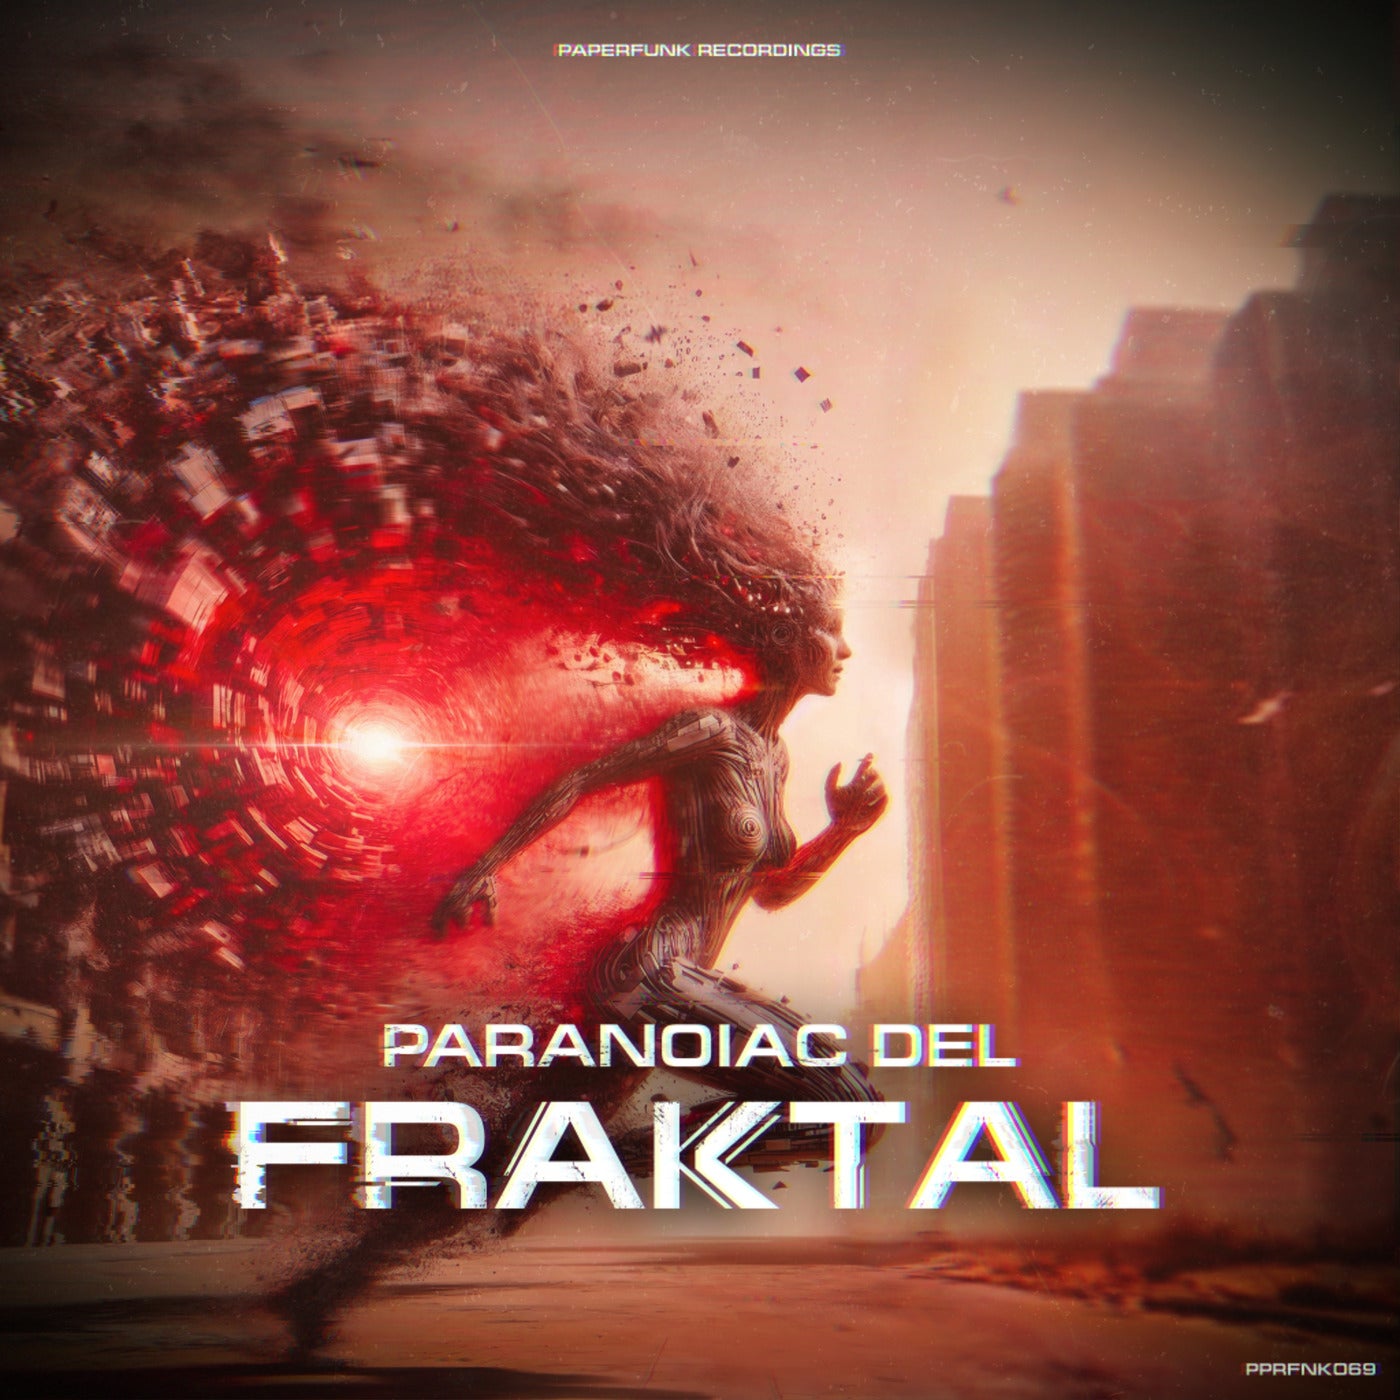 Fraktal - Original Mix